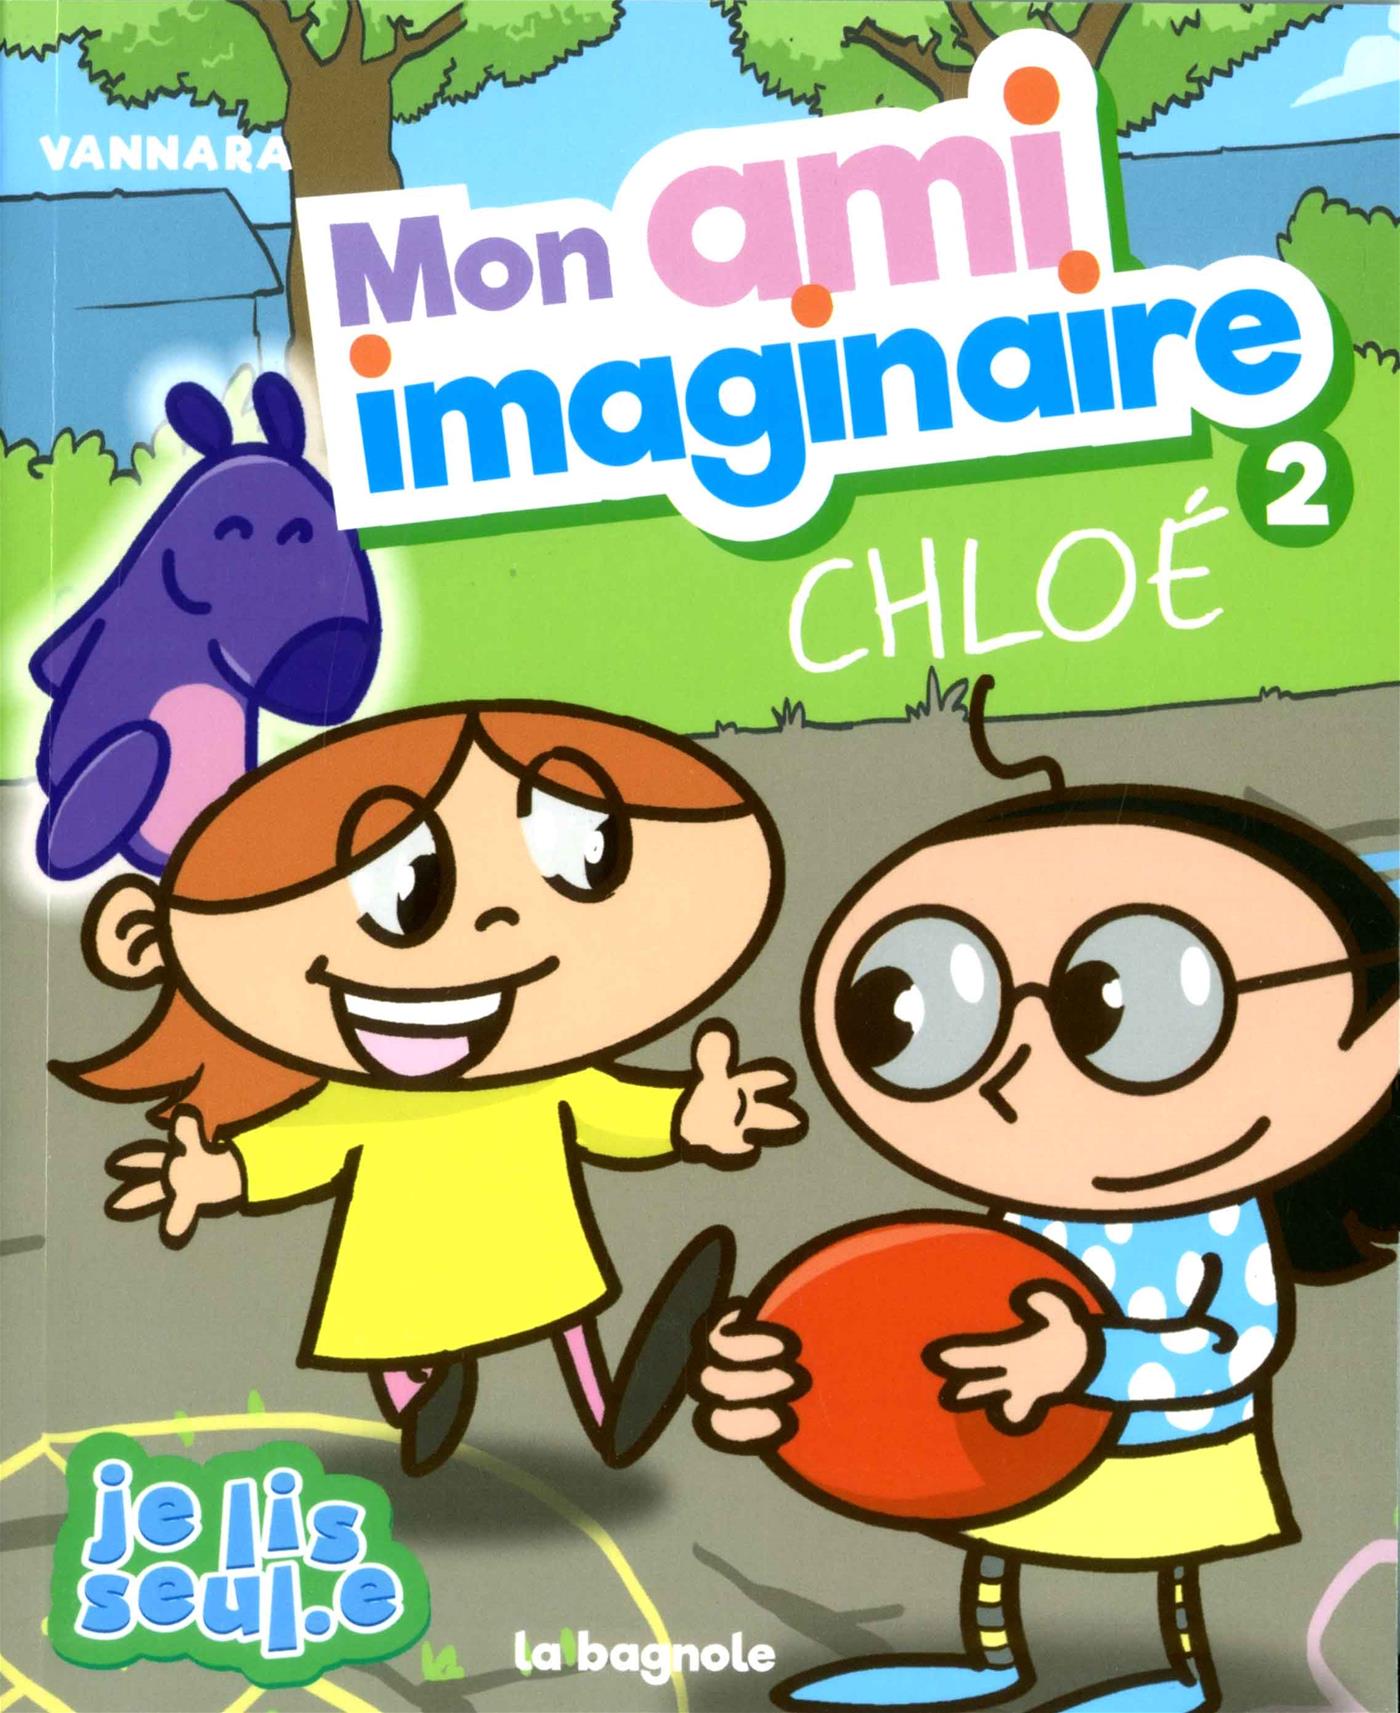 Mon ami imaginaire, tome 2: Chloé